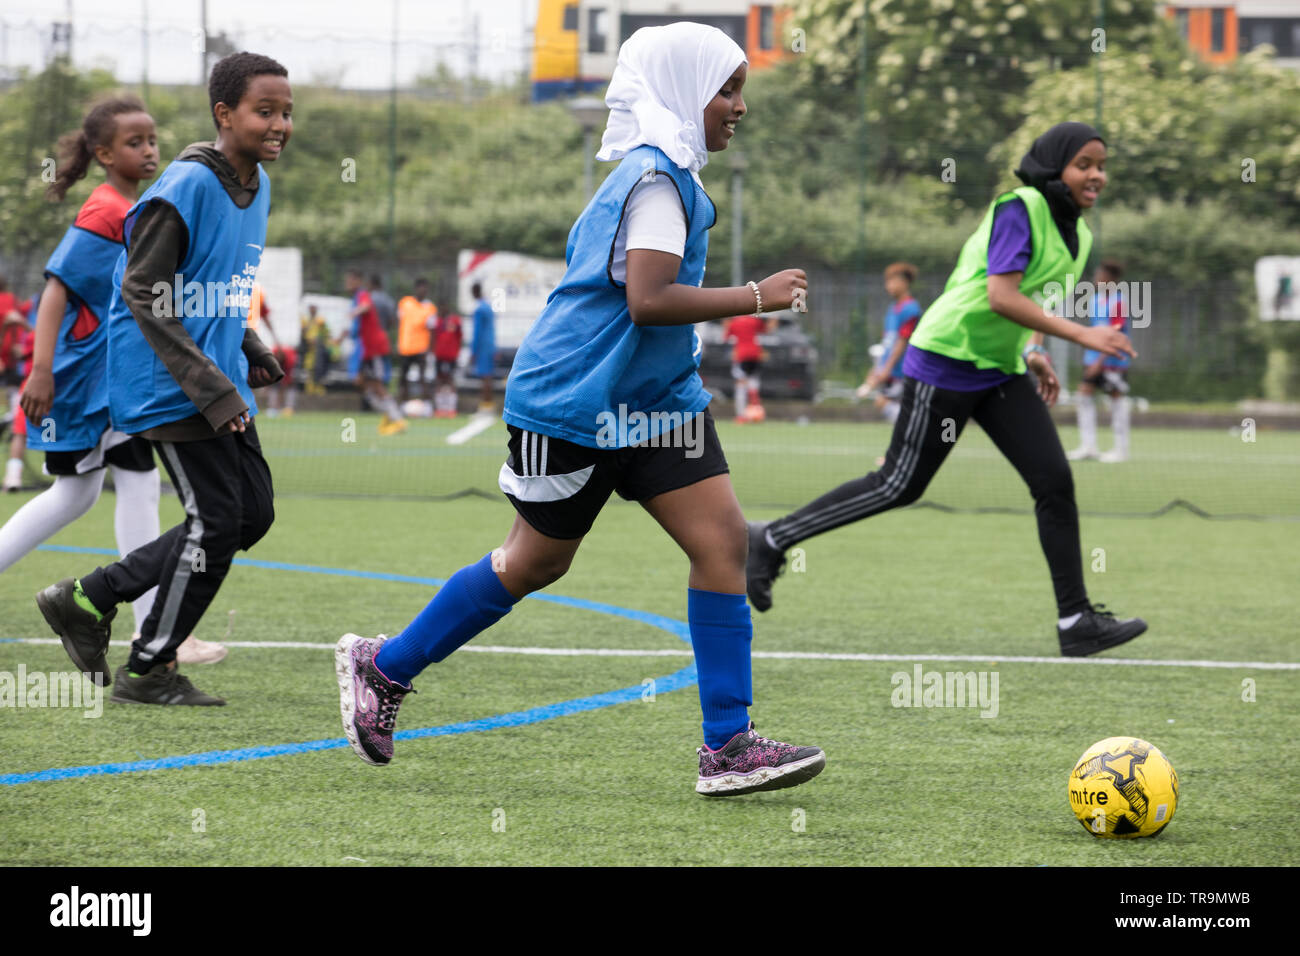 Les filles musulmanes jouent au football sur un terrain d'entraînement astroturf. Certains portent un hijab (foulard). Banque D'Images